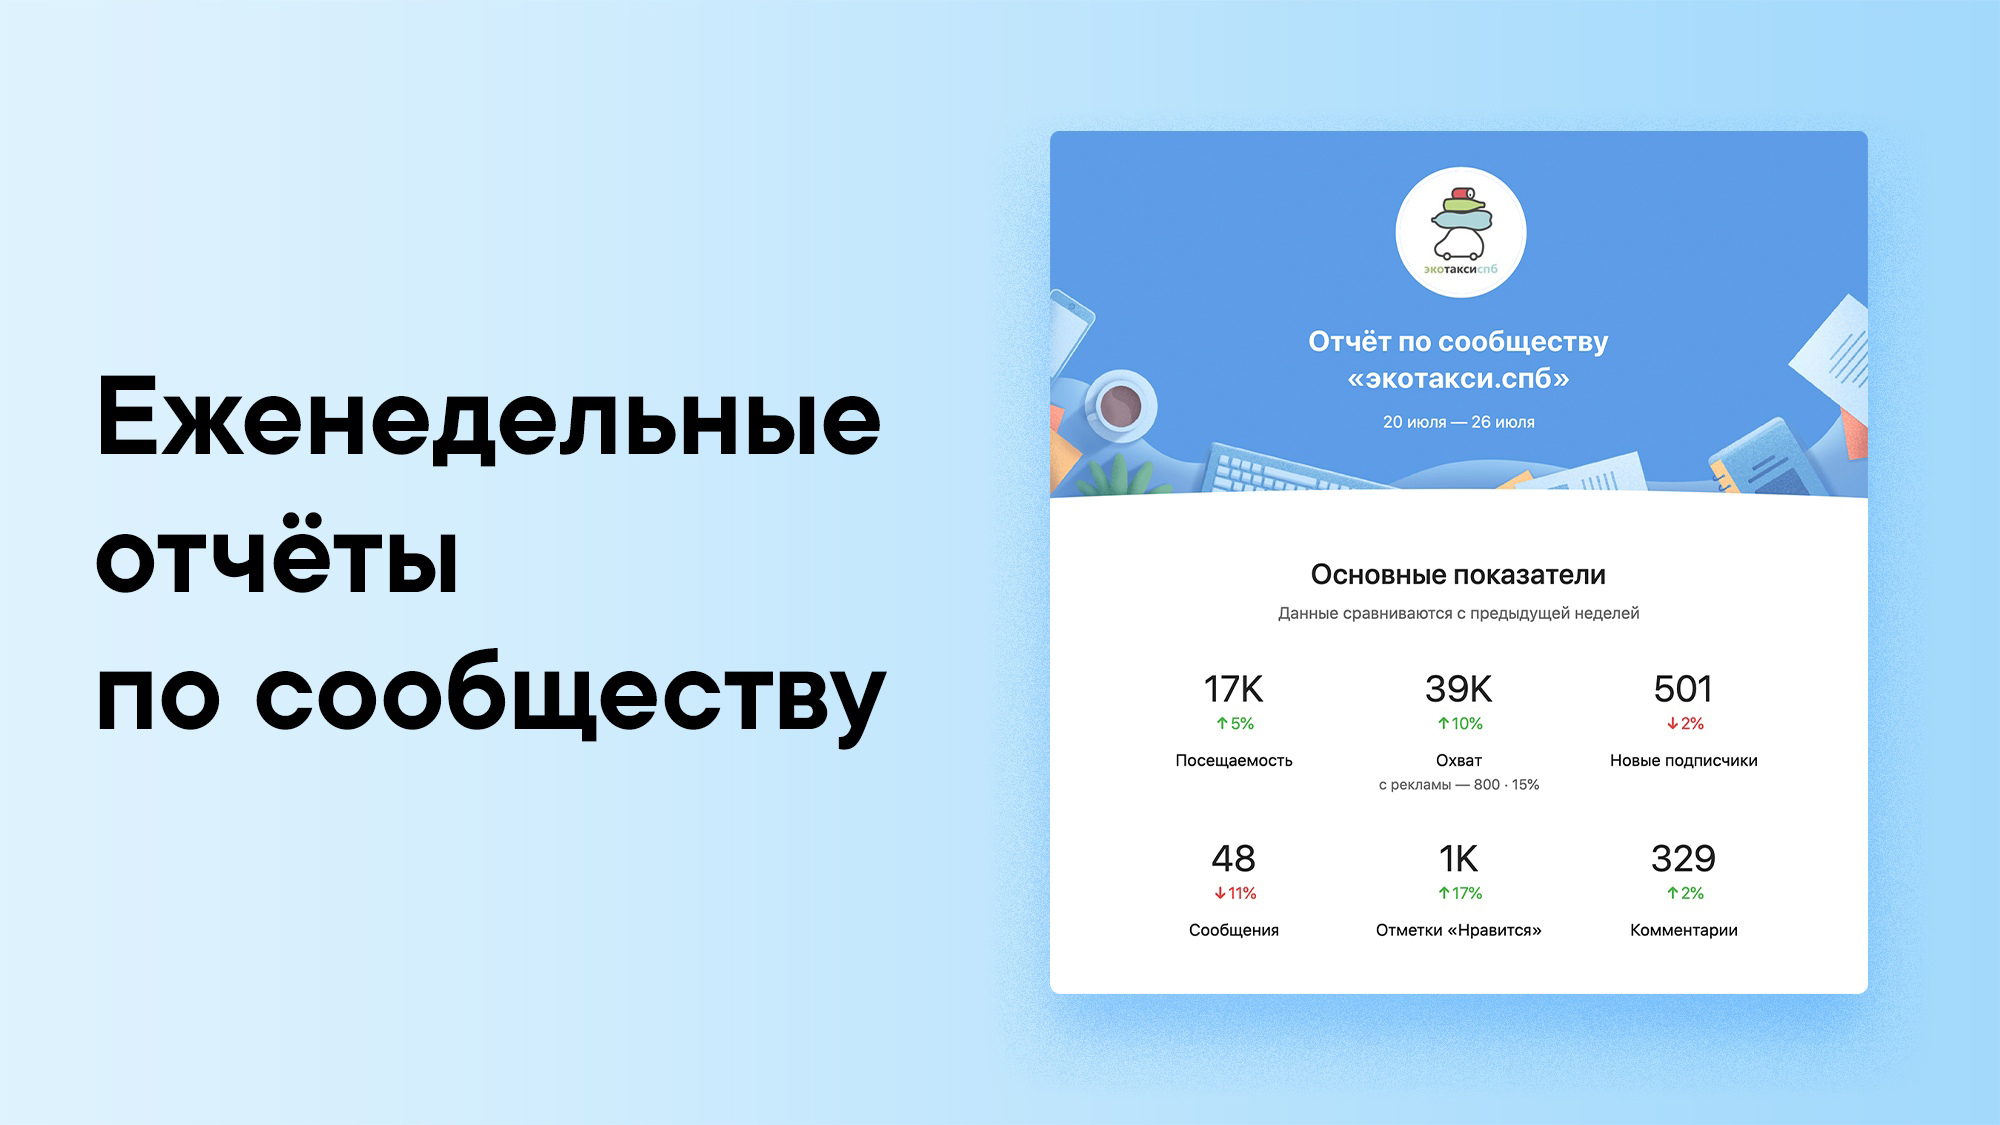 Страницы бизнеса ВКонтакте теперь будут получать отчёты со статистикой сообщества